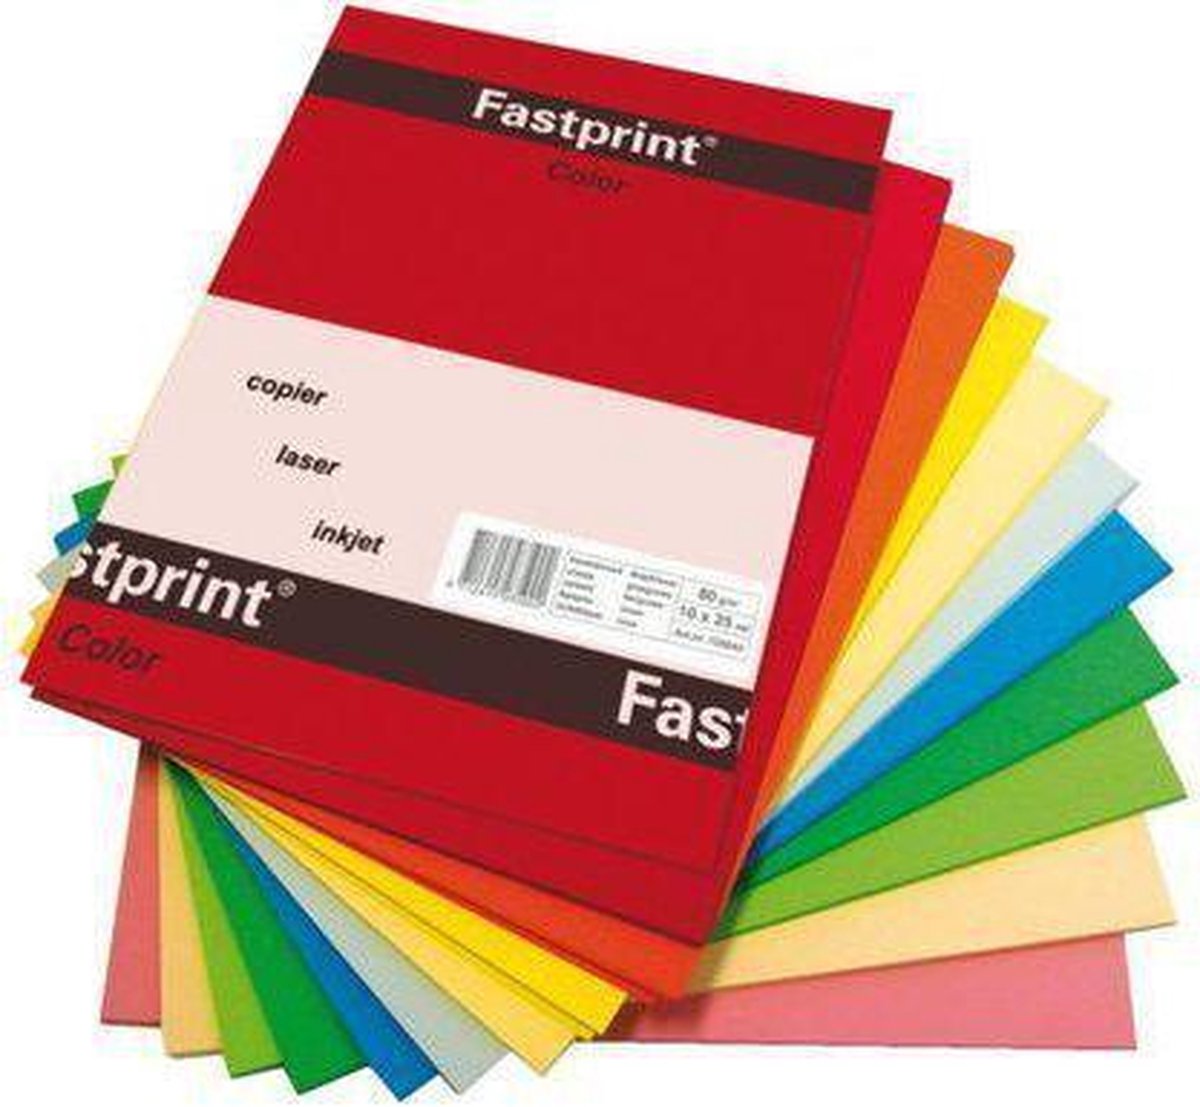 Afspraak nooit Taalkunde Kopieerpapier Fastprint A4 120gr 10kleuren x10vel 100vel | bol.com